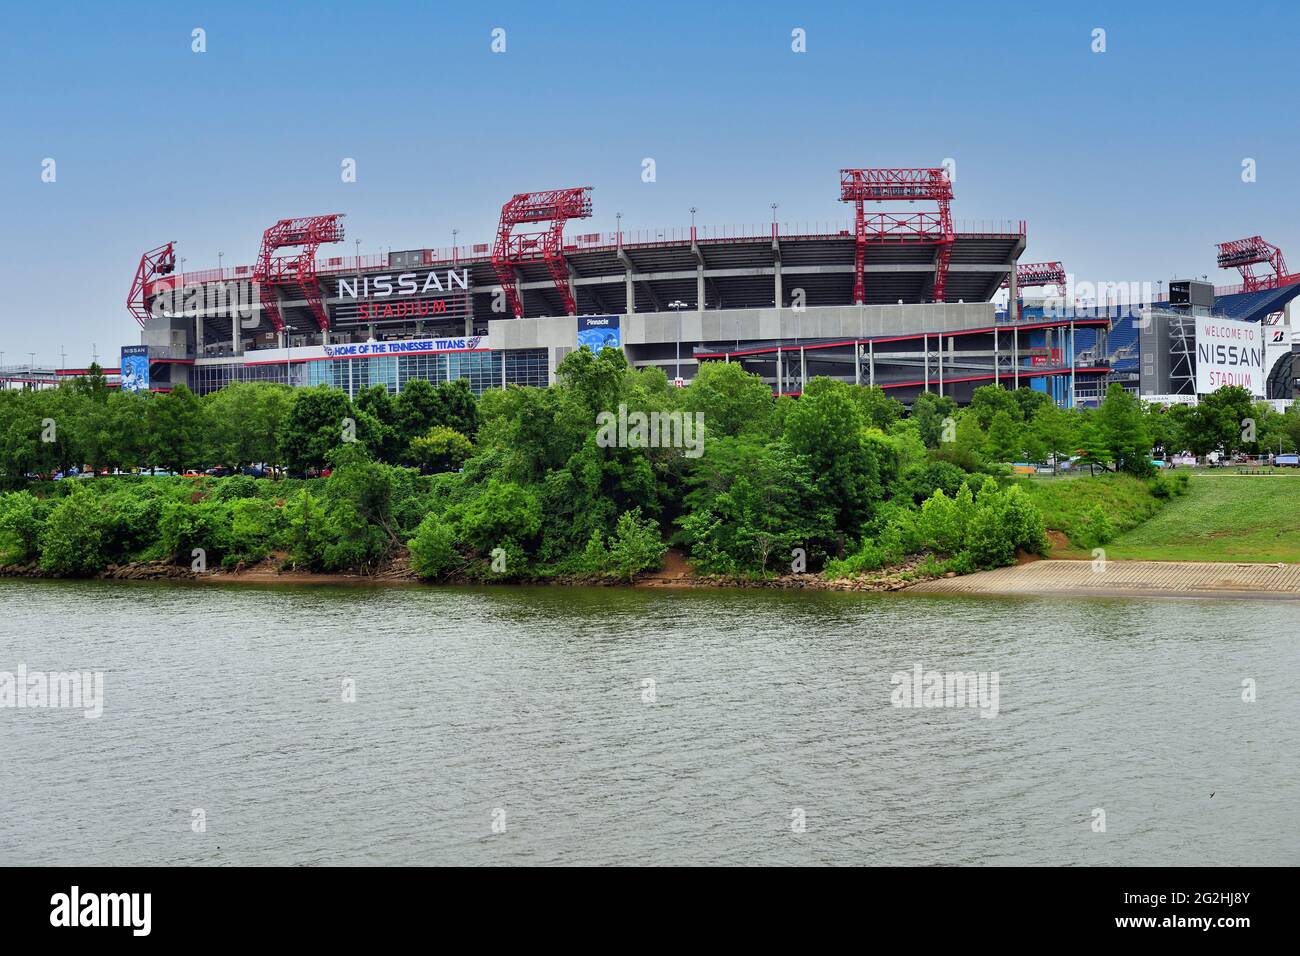 Nashville, Tennessee, Estados Unidos. Nissan Stadium, que bordea el río Cumberland cerca del centro de la ciudad. El estadio se utiliza principalmente como lugar de fútbol. Foto de stock